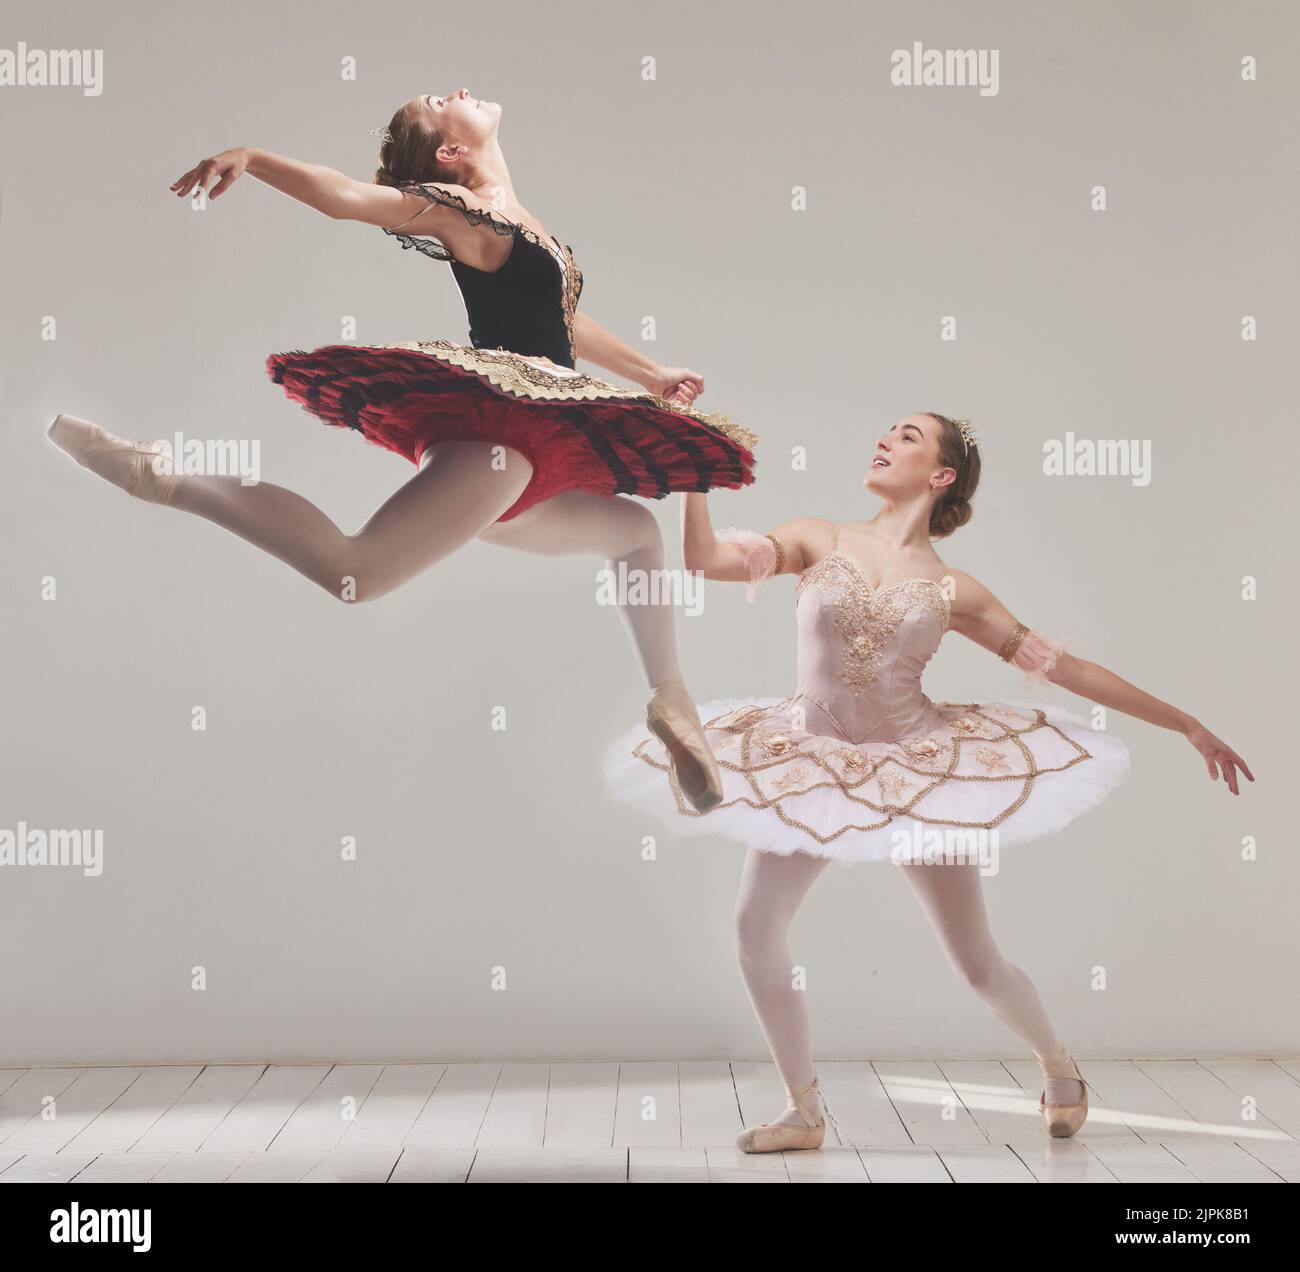 Ballerina, ballerini e artisti che saltano in aria con flessibilità, movimento ed equilibrio in uno studio. Energia, energia e classica Foto Stock